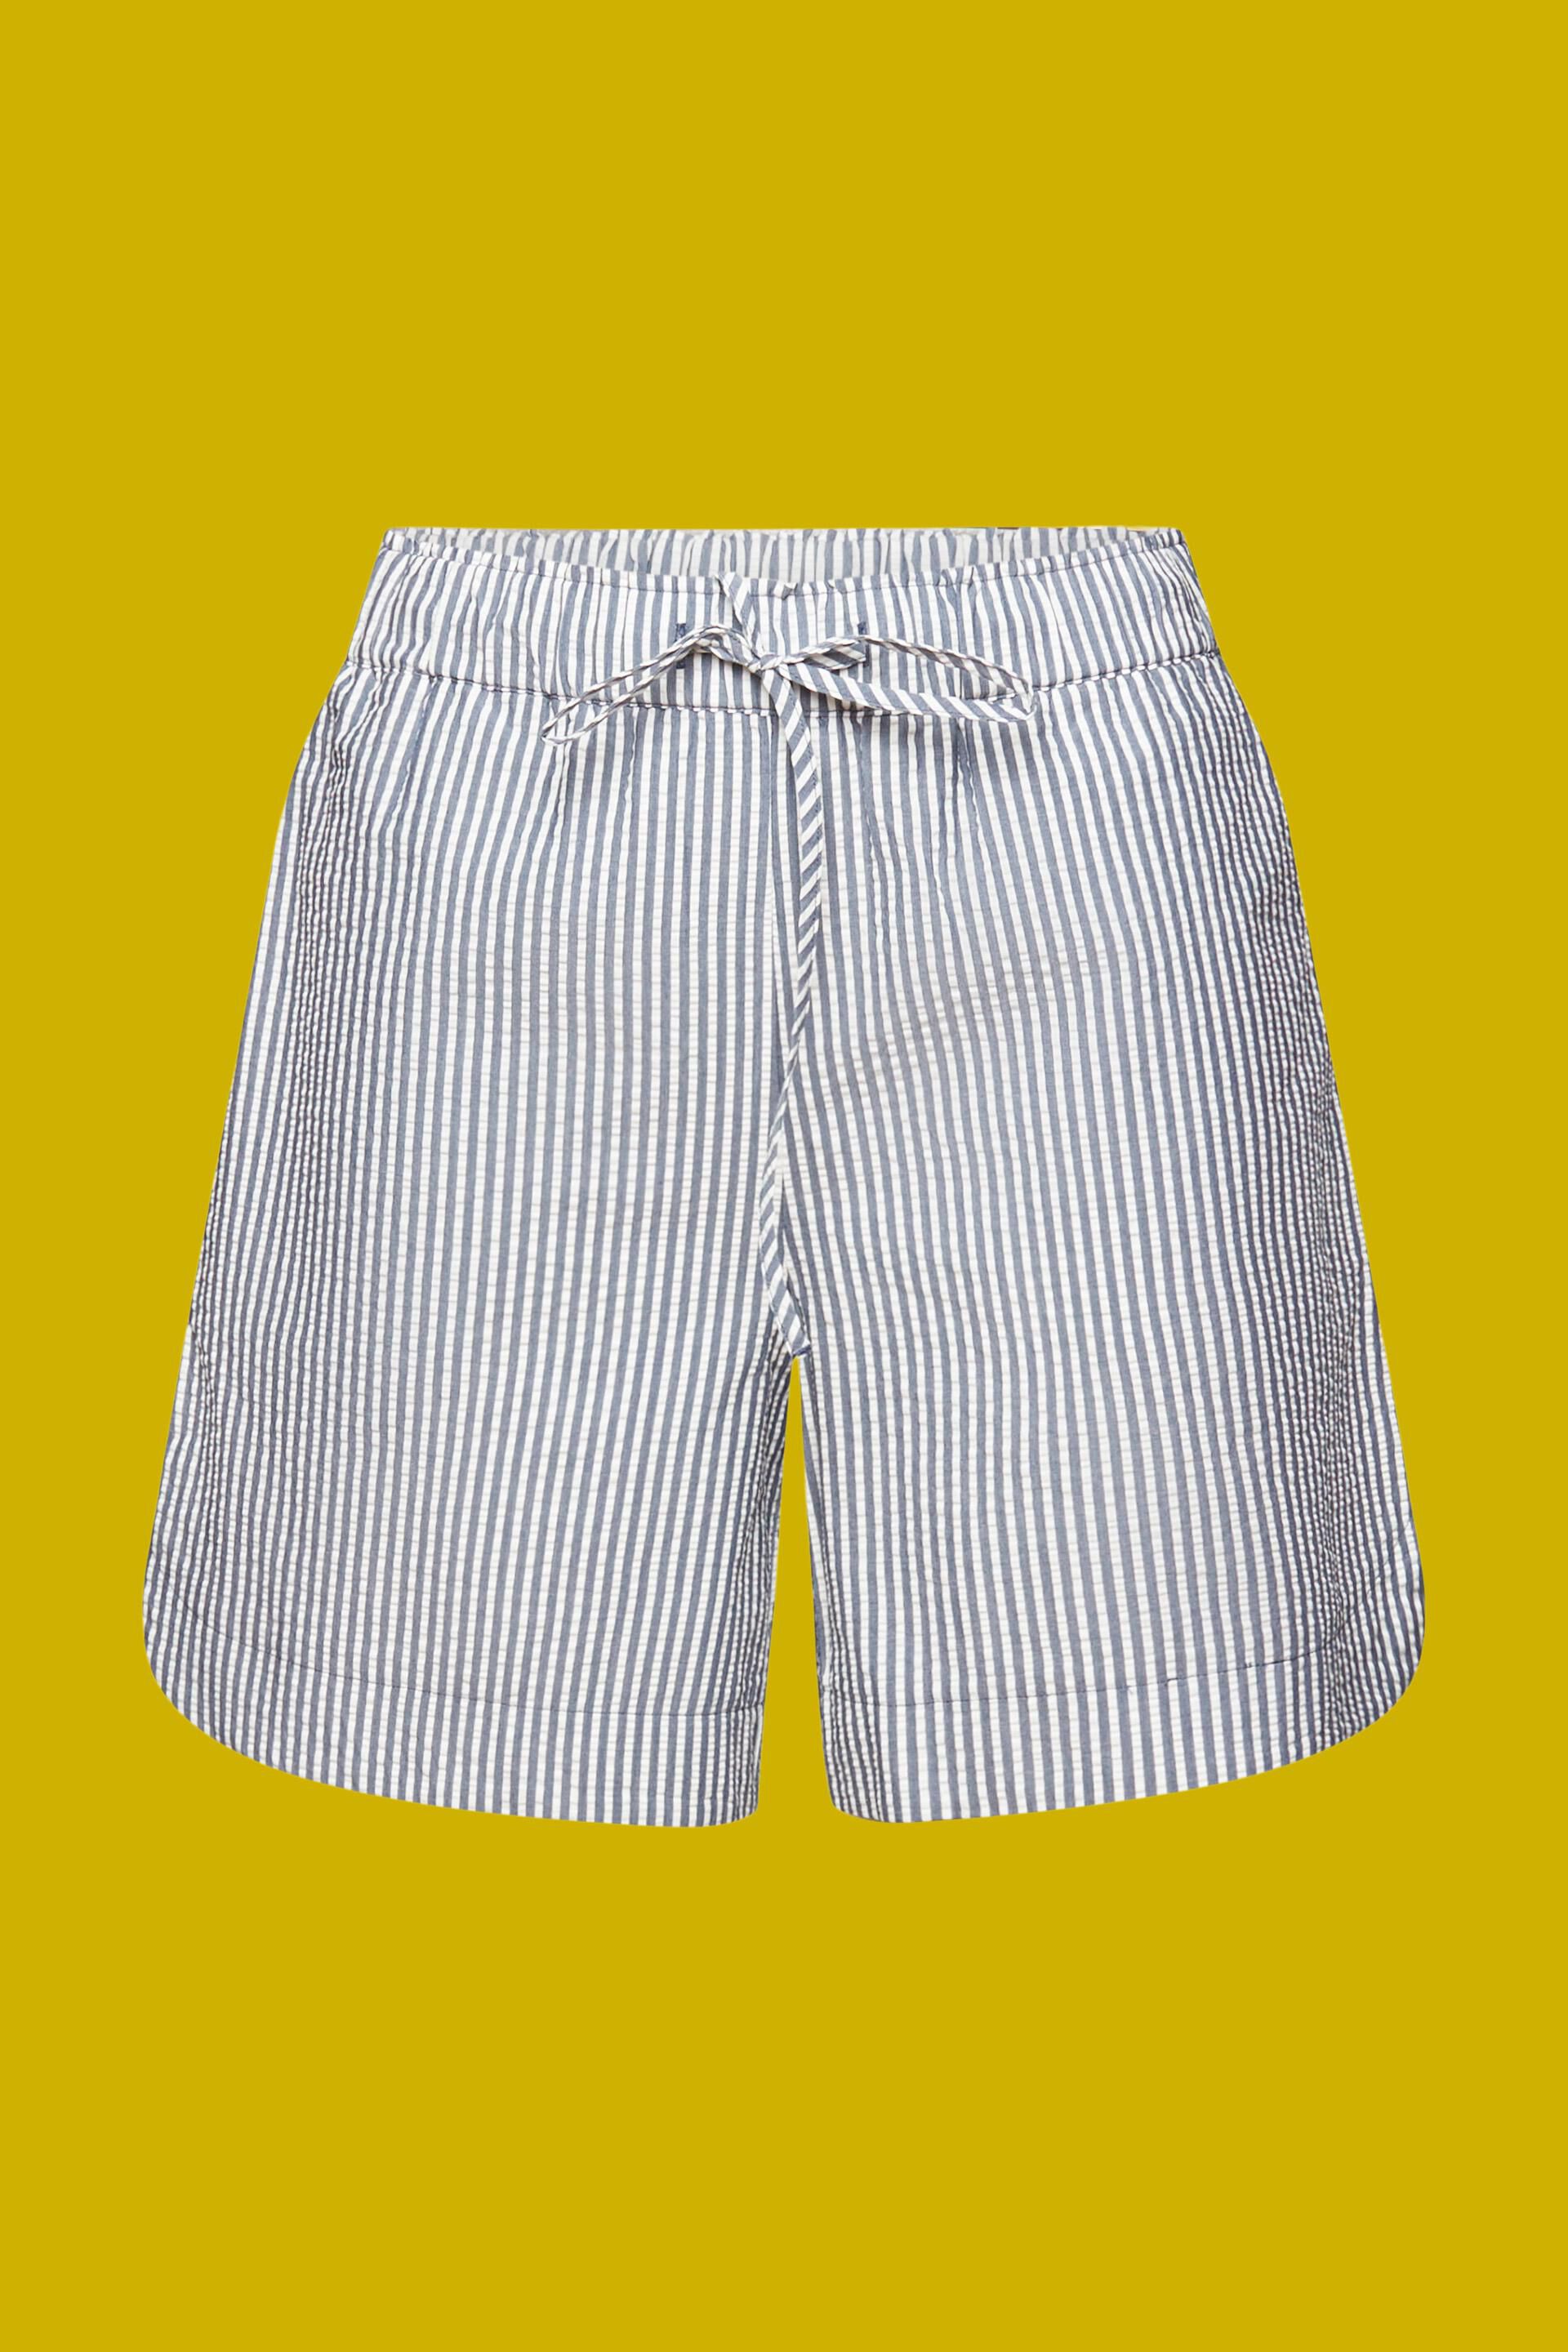 Striped seersucker shorts in white - Commas